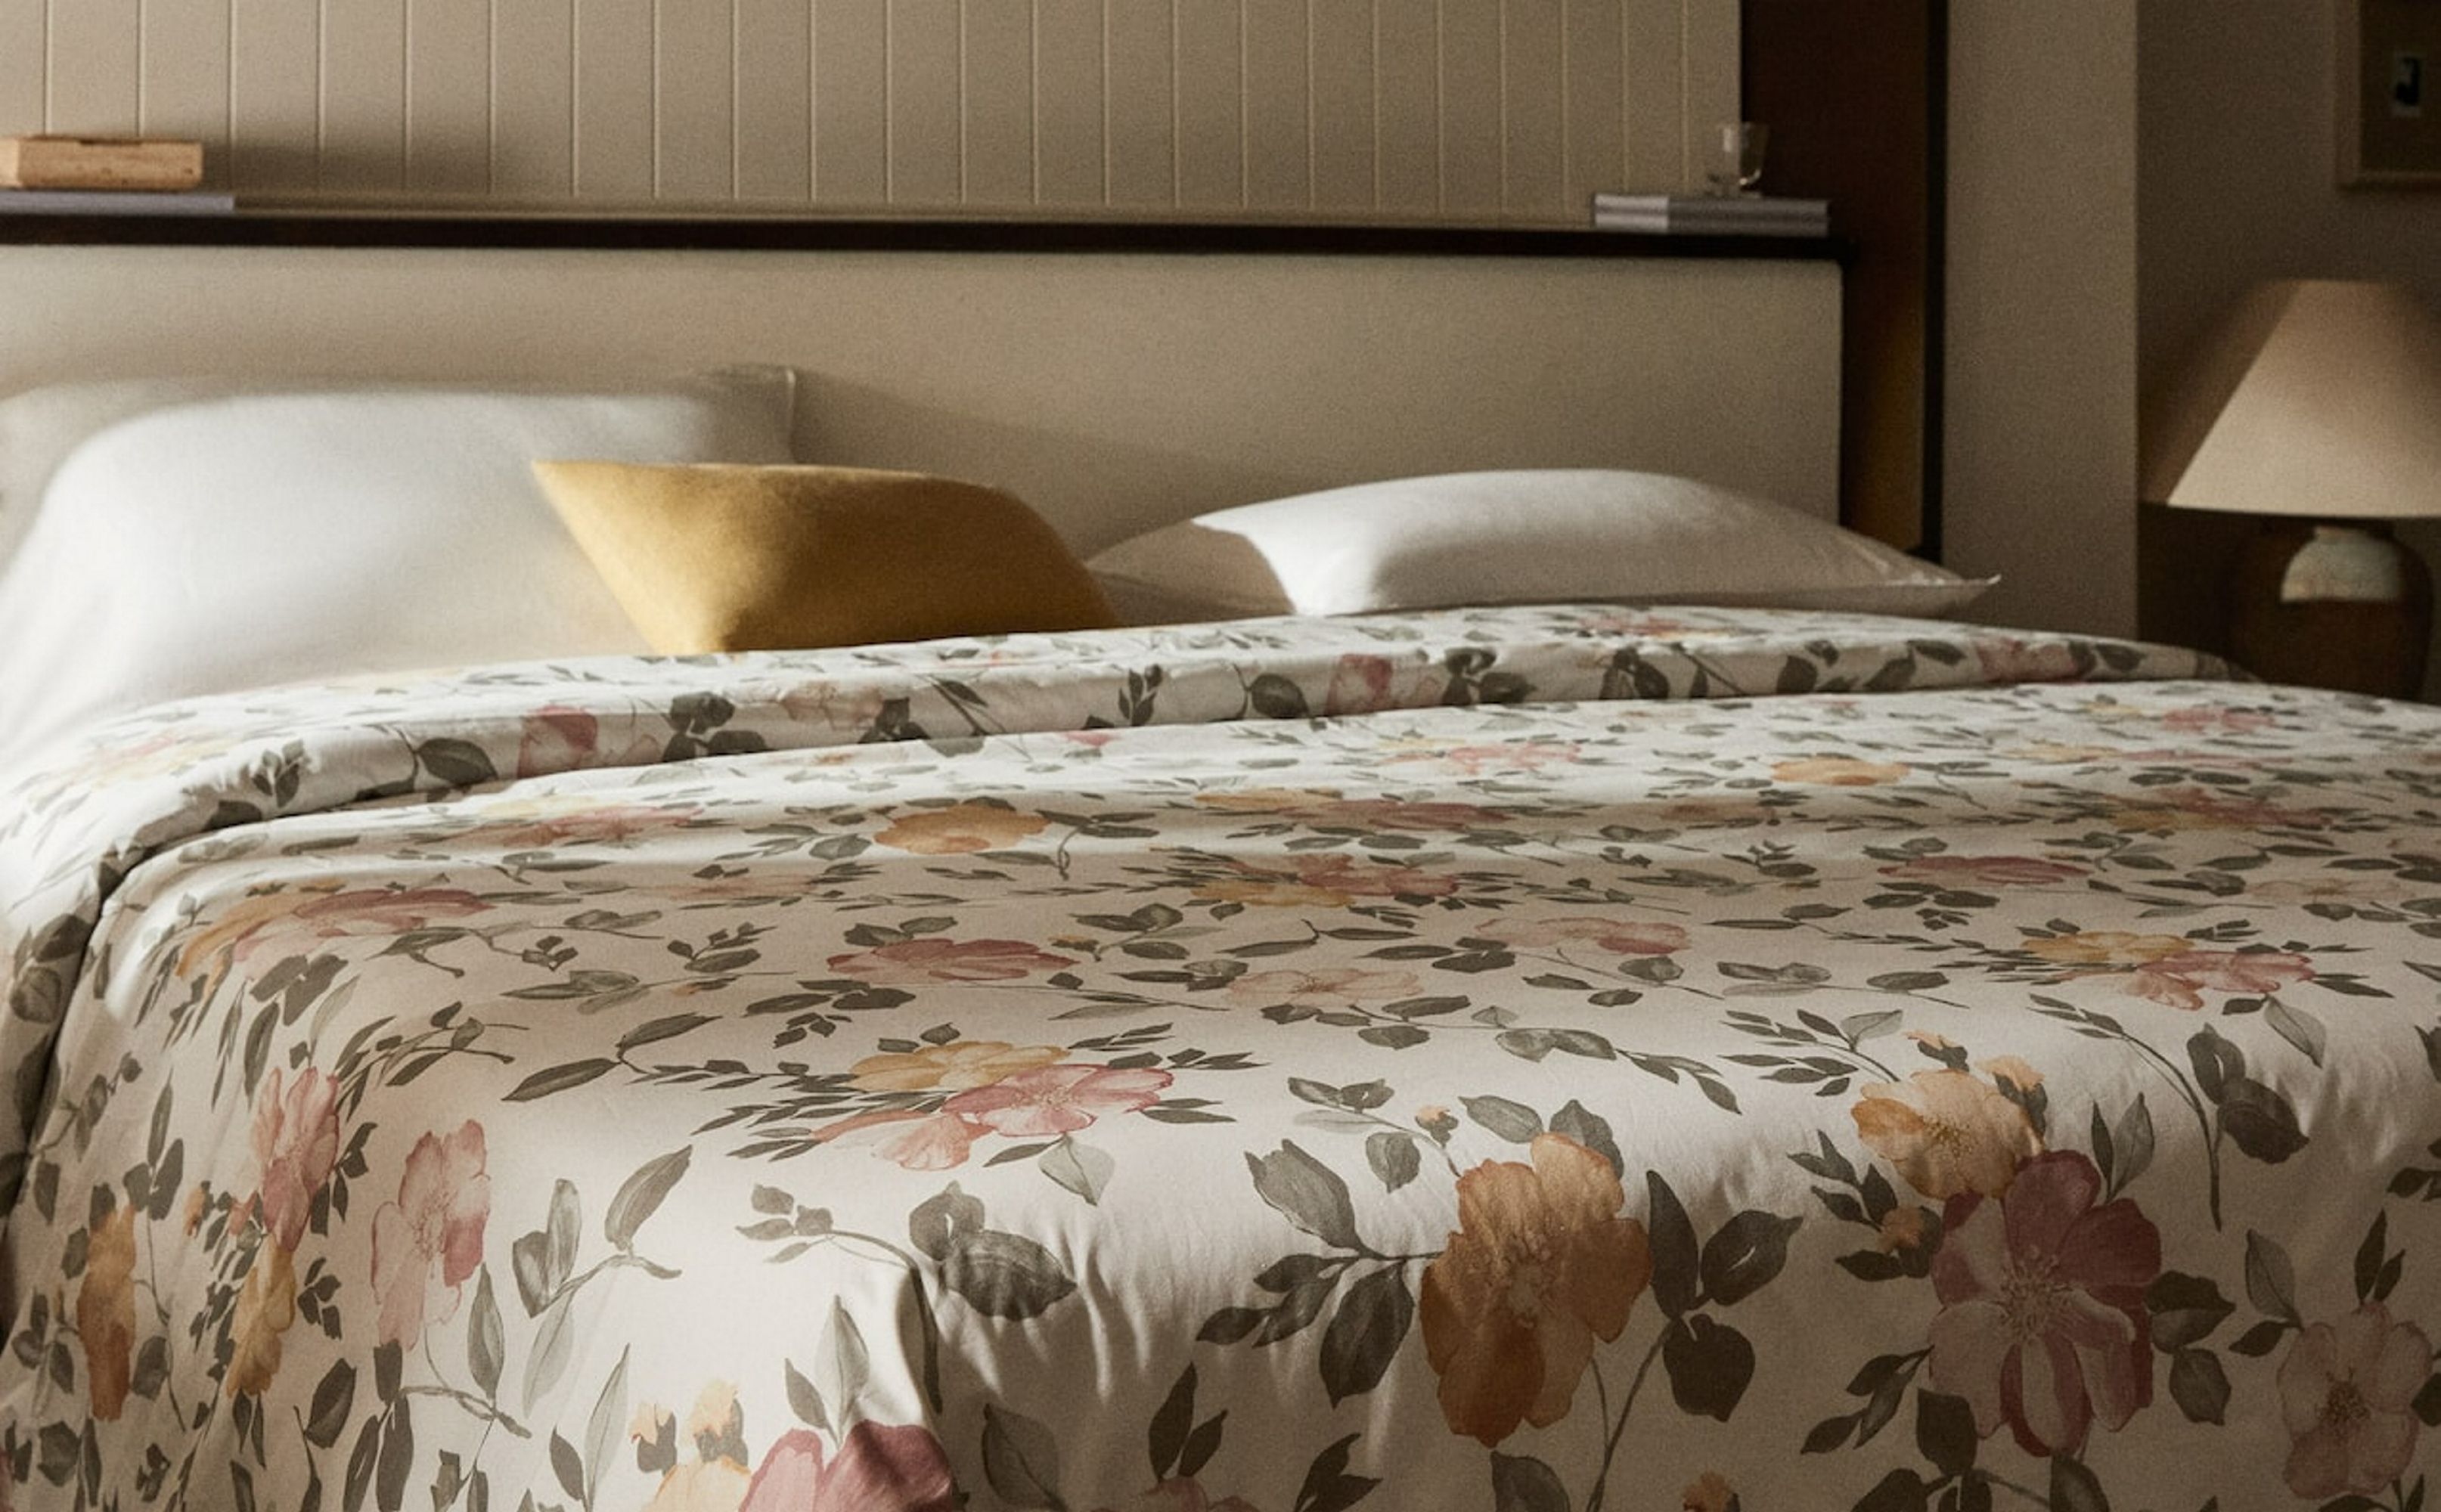 Cómo elegir y disponer la ropa de cama para un 'bed styling' ideal